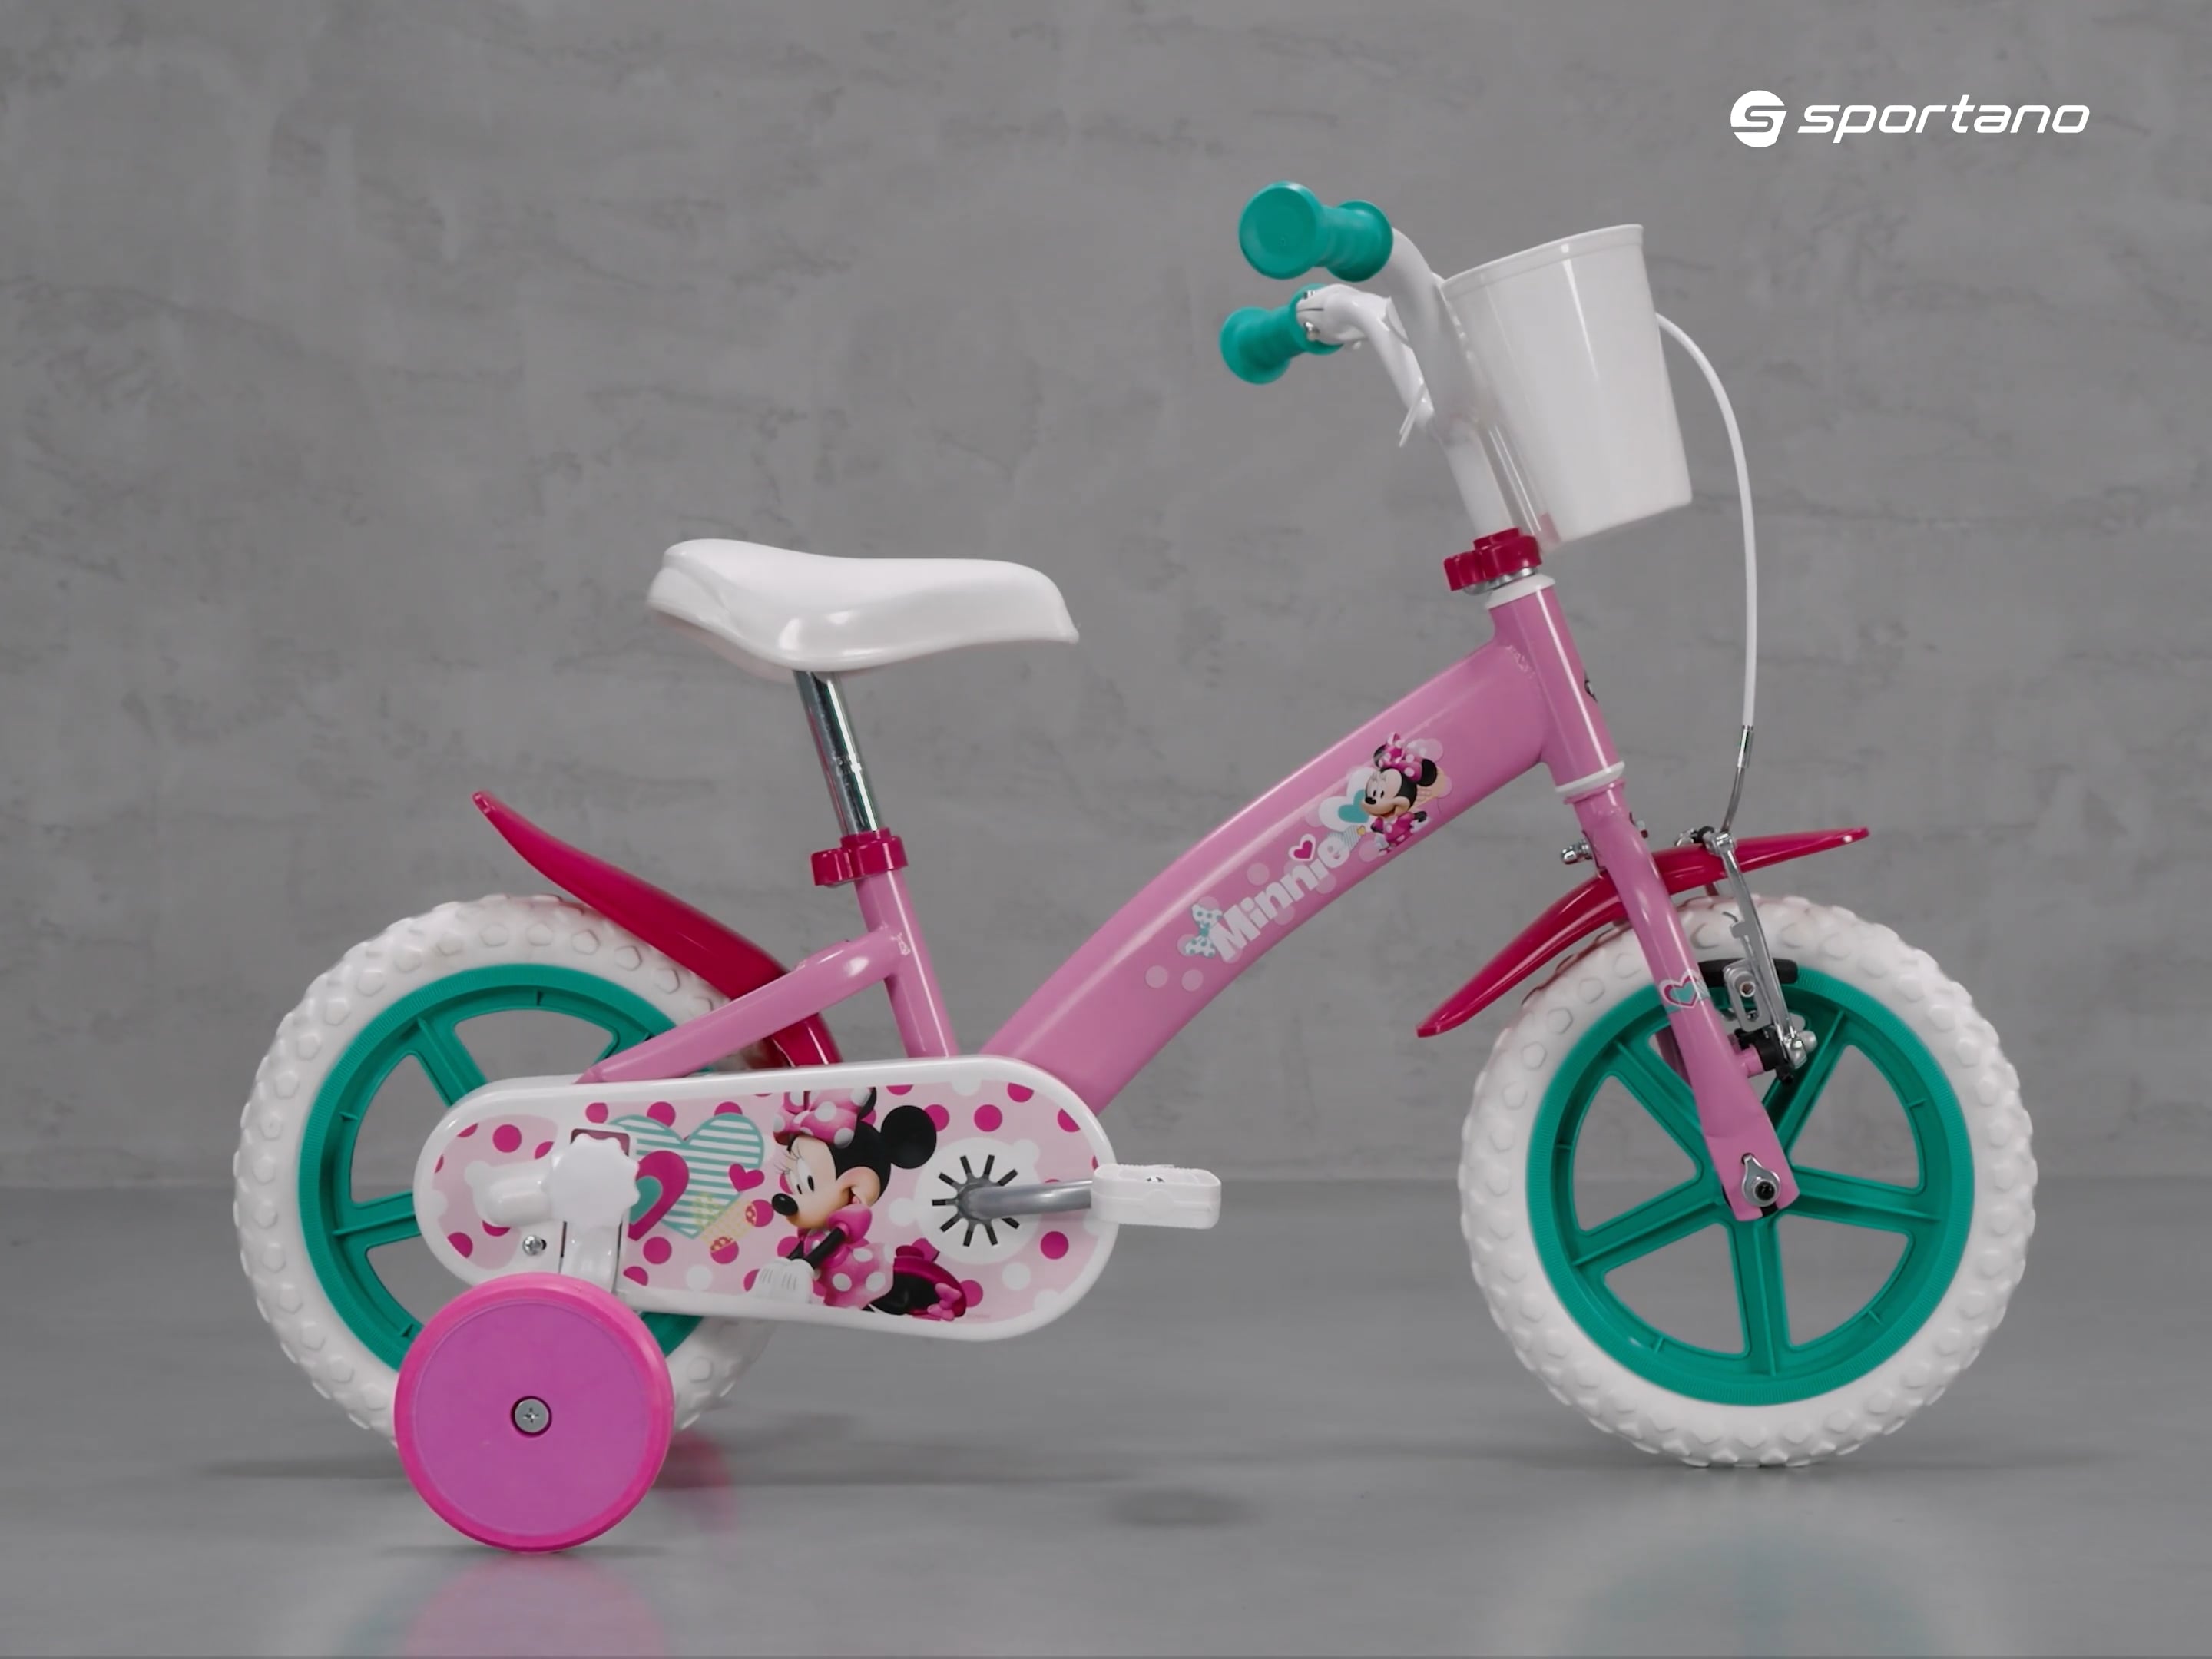 Detský bicykel Huffy Minnie pink 22431W